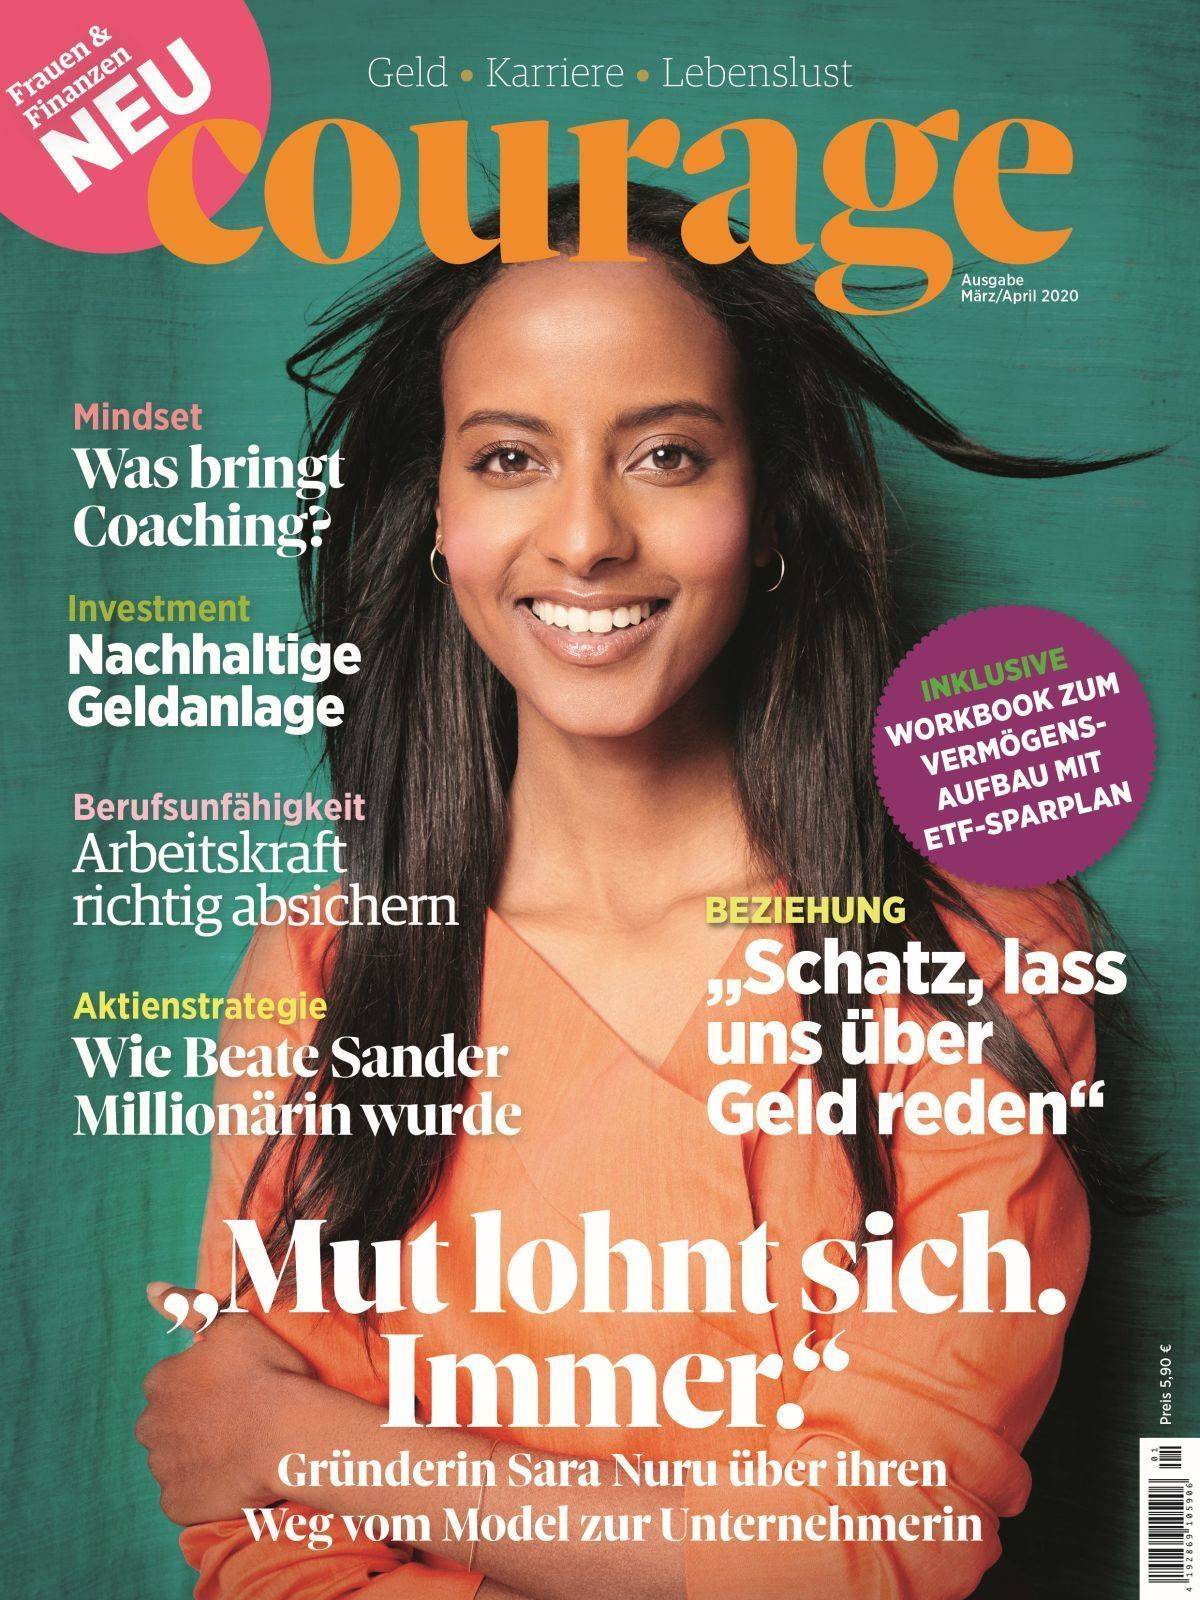 Das Cover der ersten "Courage"-Ausgabe.